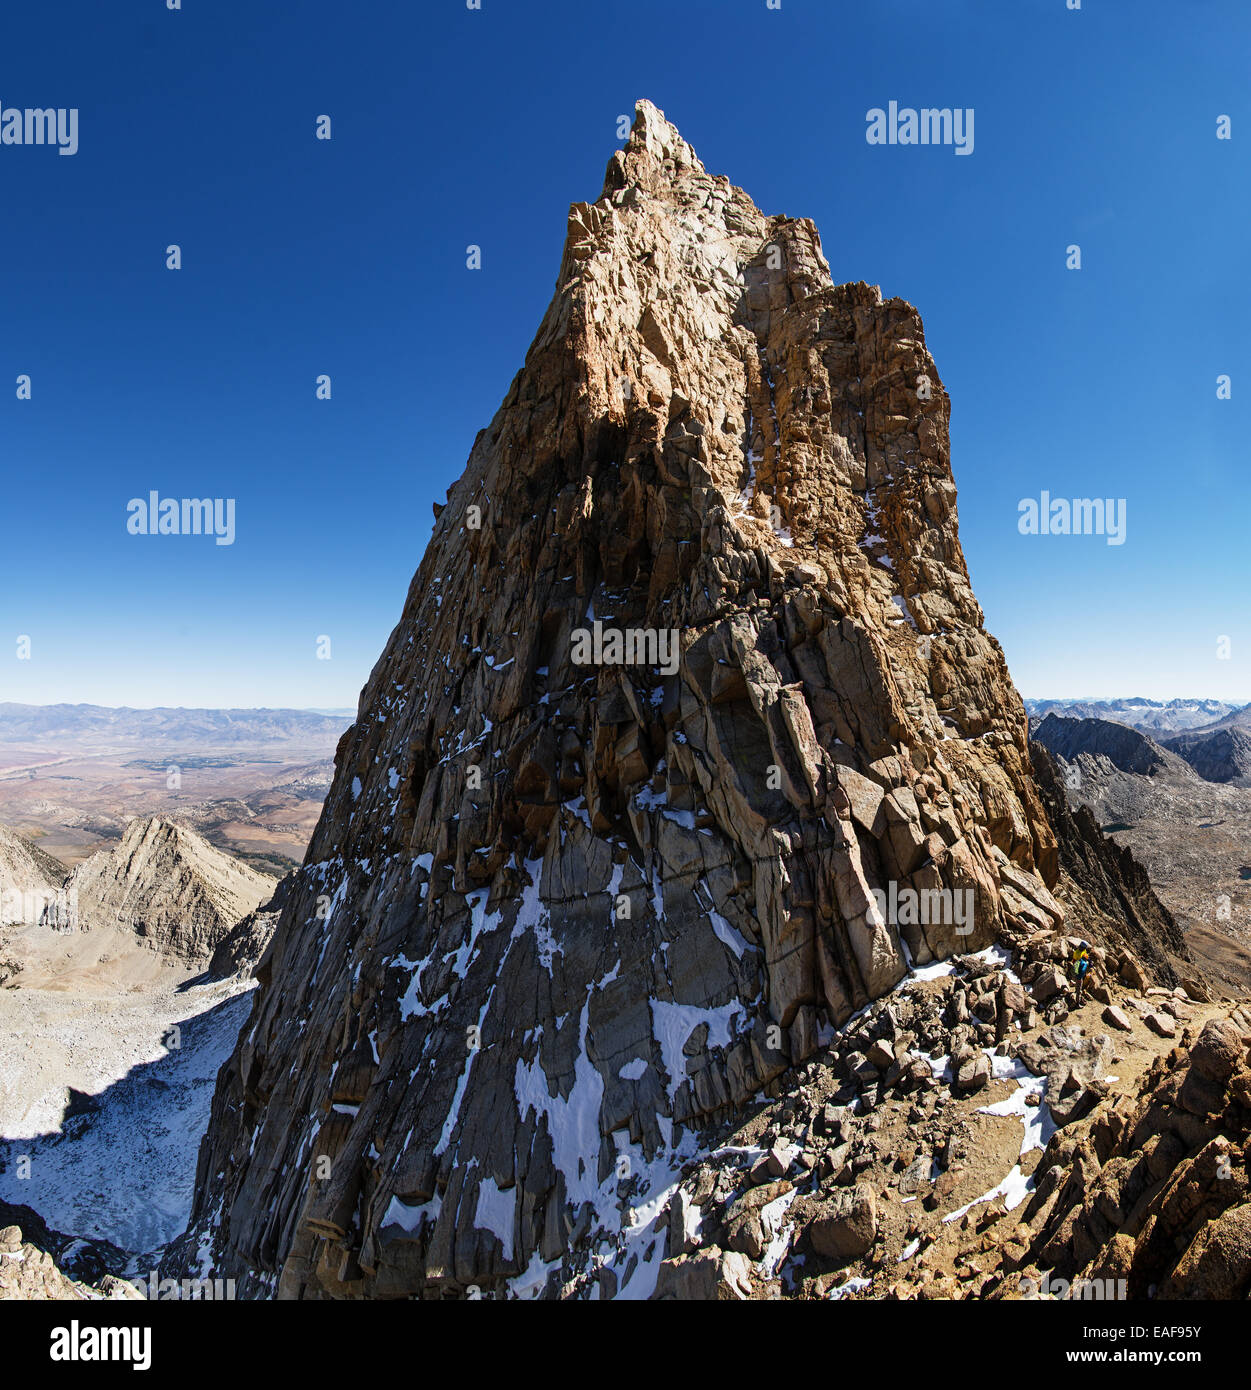 Sommet du mont Humphreys spire dans les montagnes de la Sierra Nevada avec deux alpinistes à la base Banque D'Images